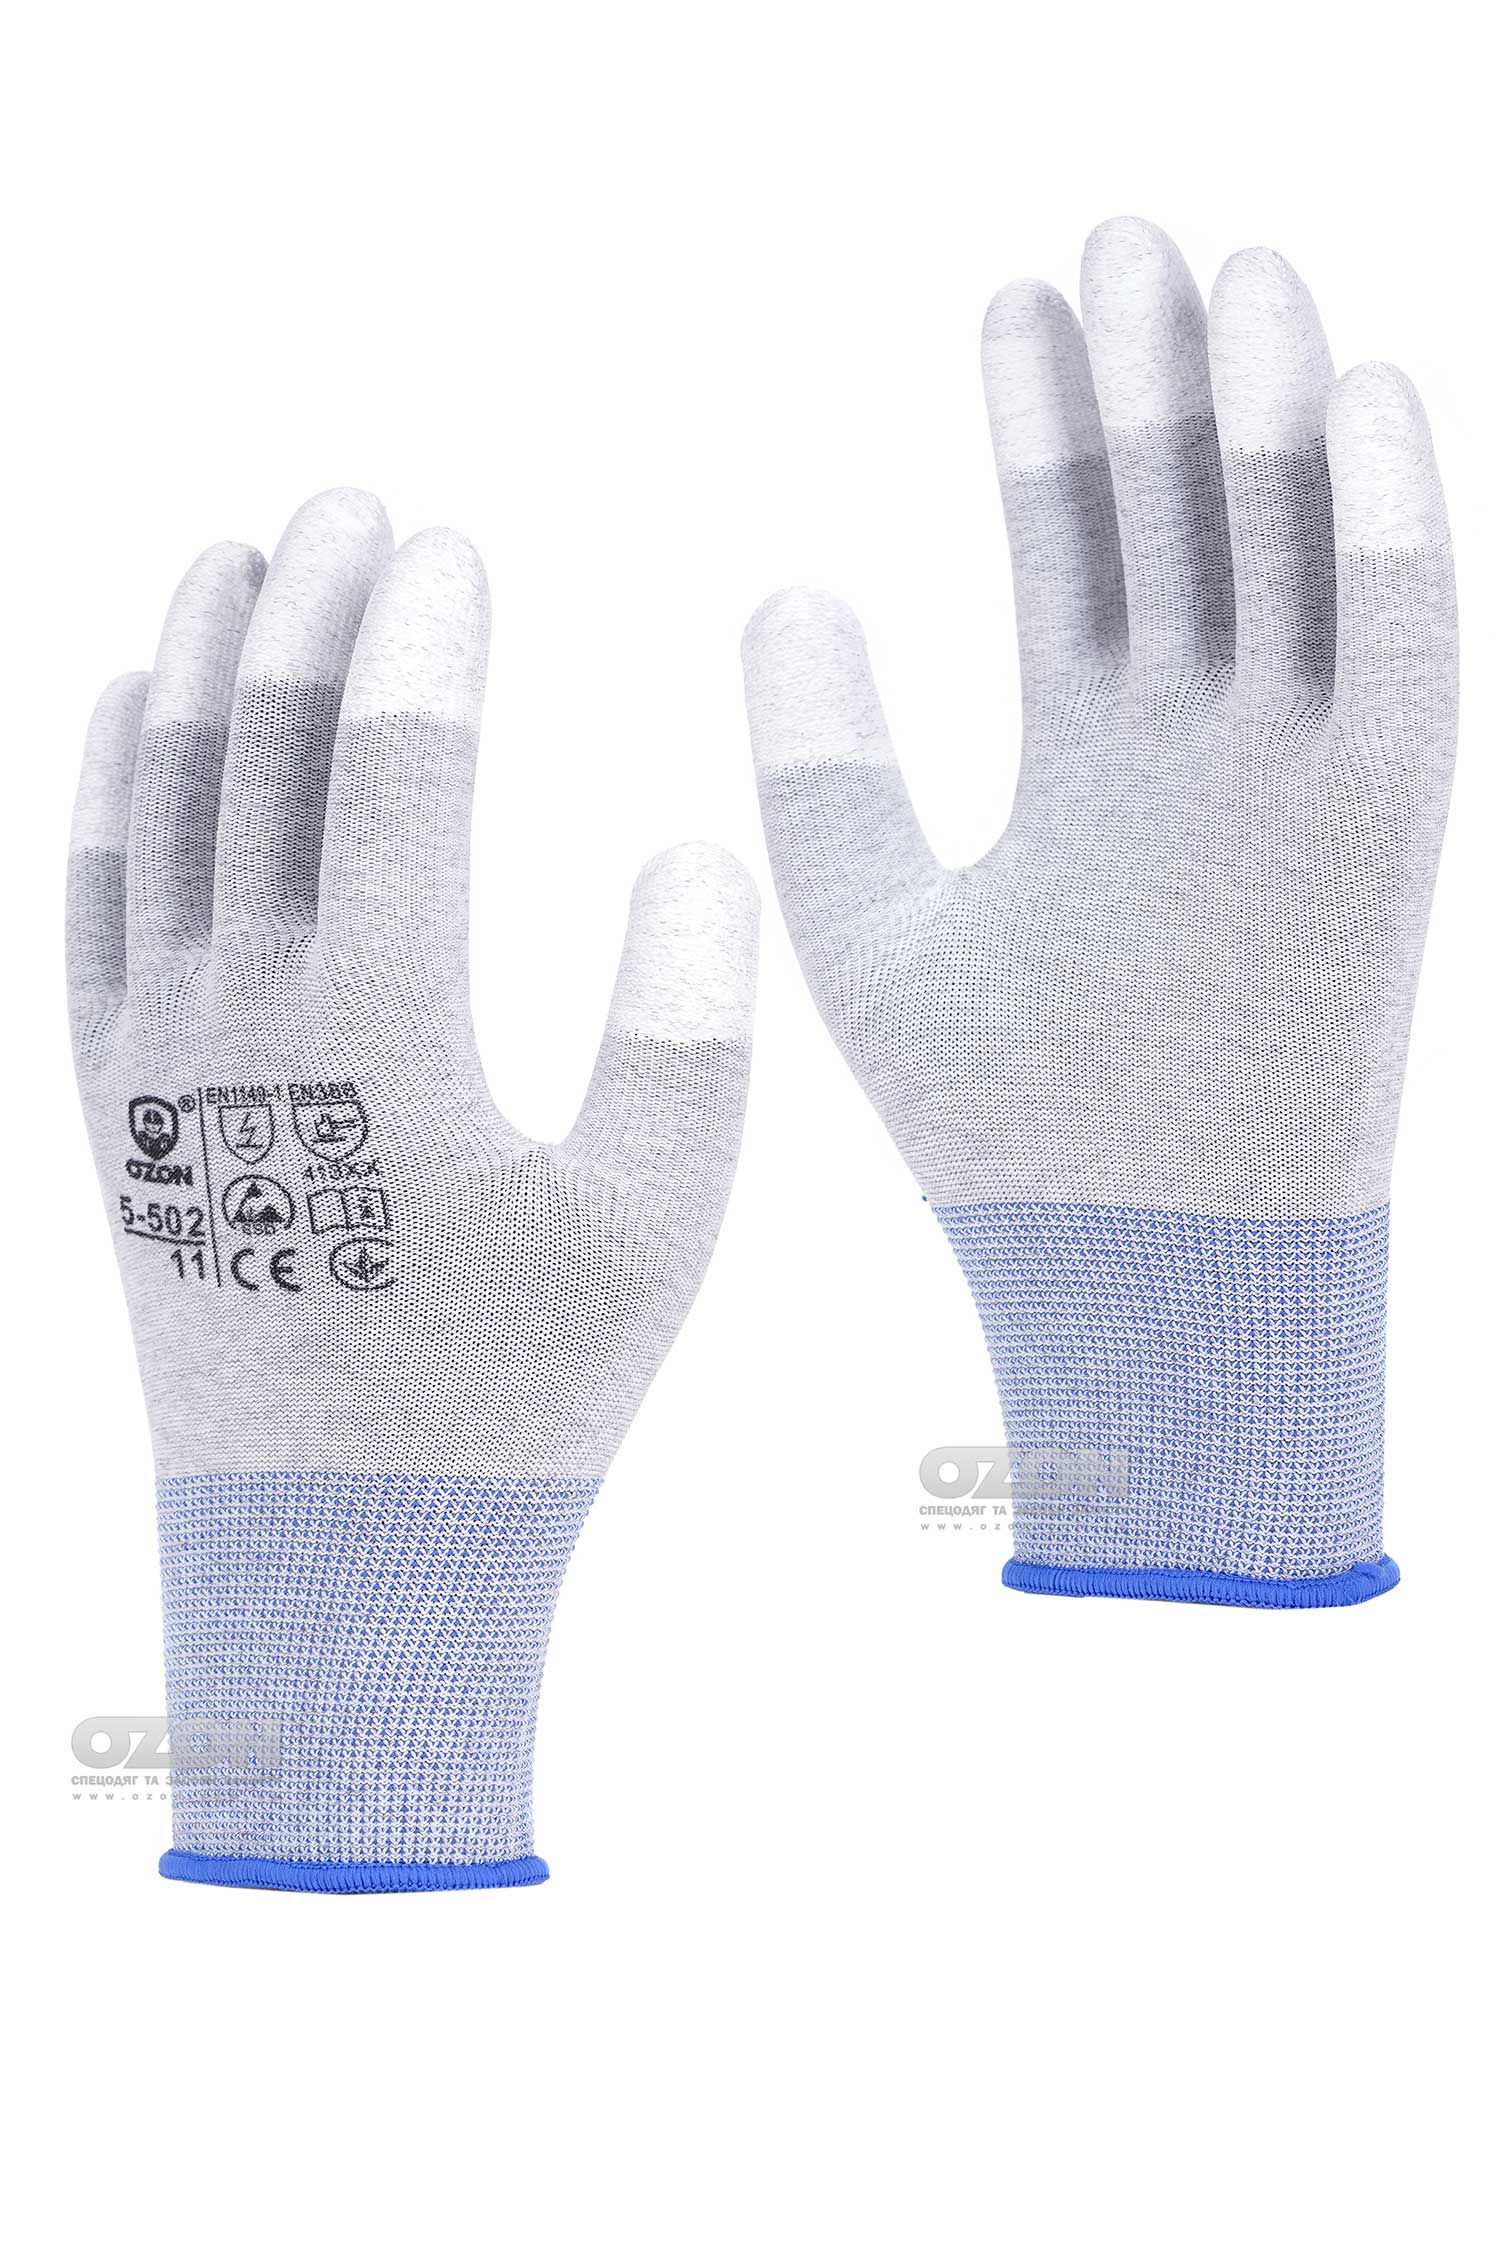 Антистатические перчатки OZON 5-502 с покрытием кончиков пальцев, серые - Фото 1